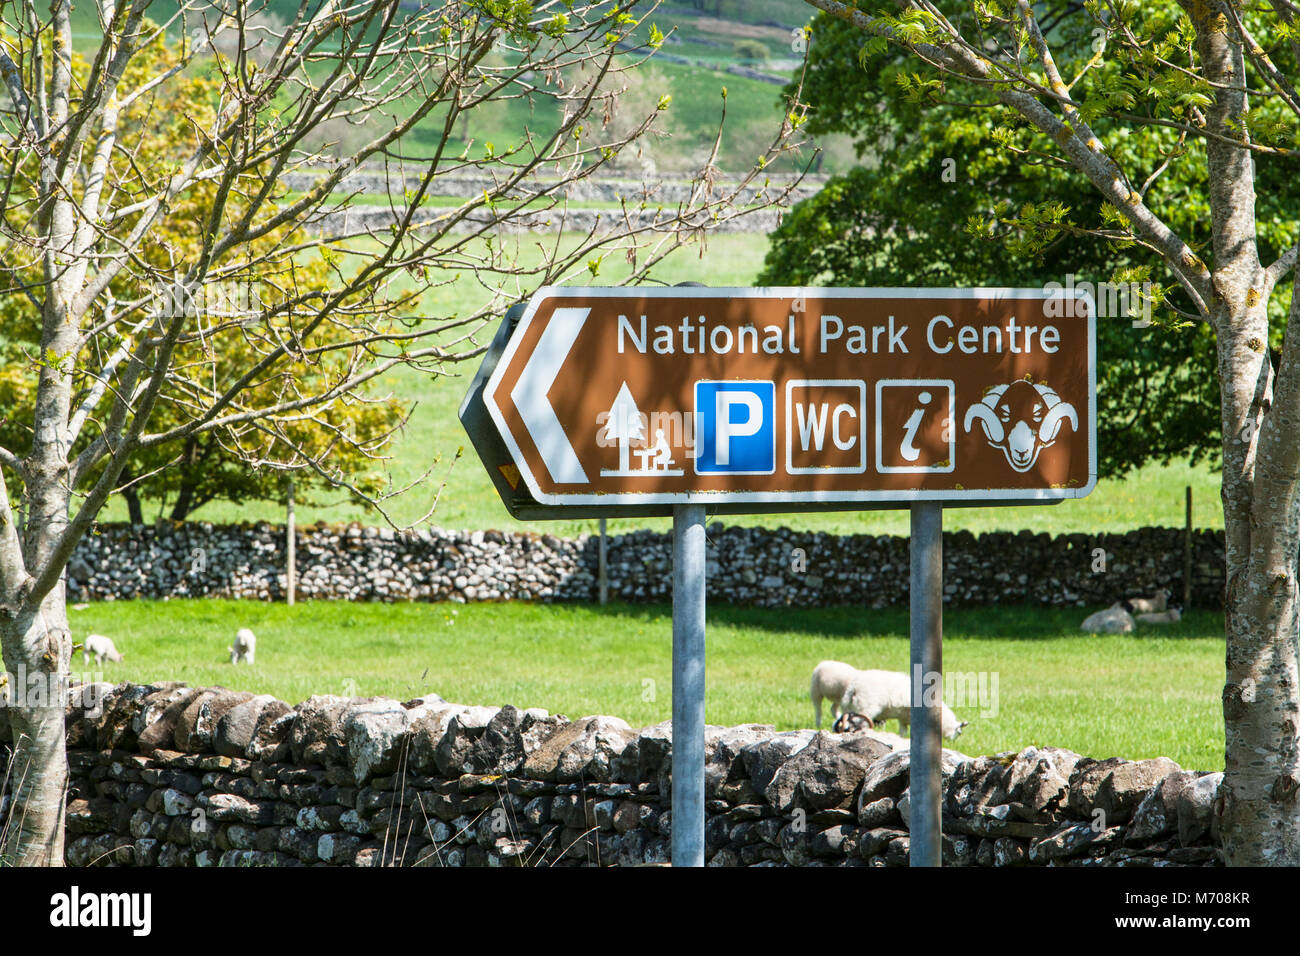 Ein Hinweisschild in den Yorkshire Dales Dorf Malham North Yorkshire UK, Regie Besucher der National Park und dem Stadtzentrum von Service Bereich Stockfoto